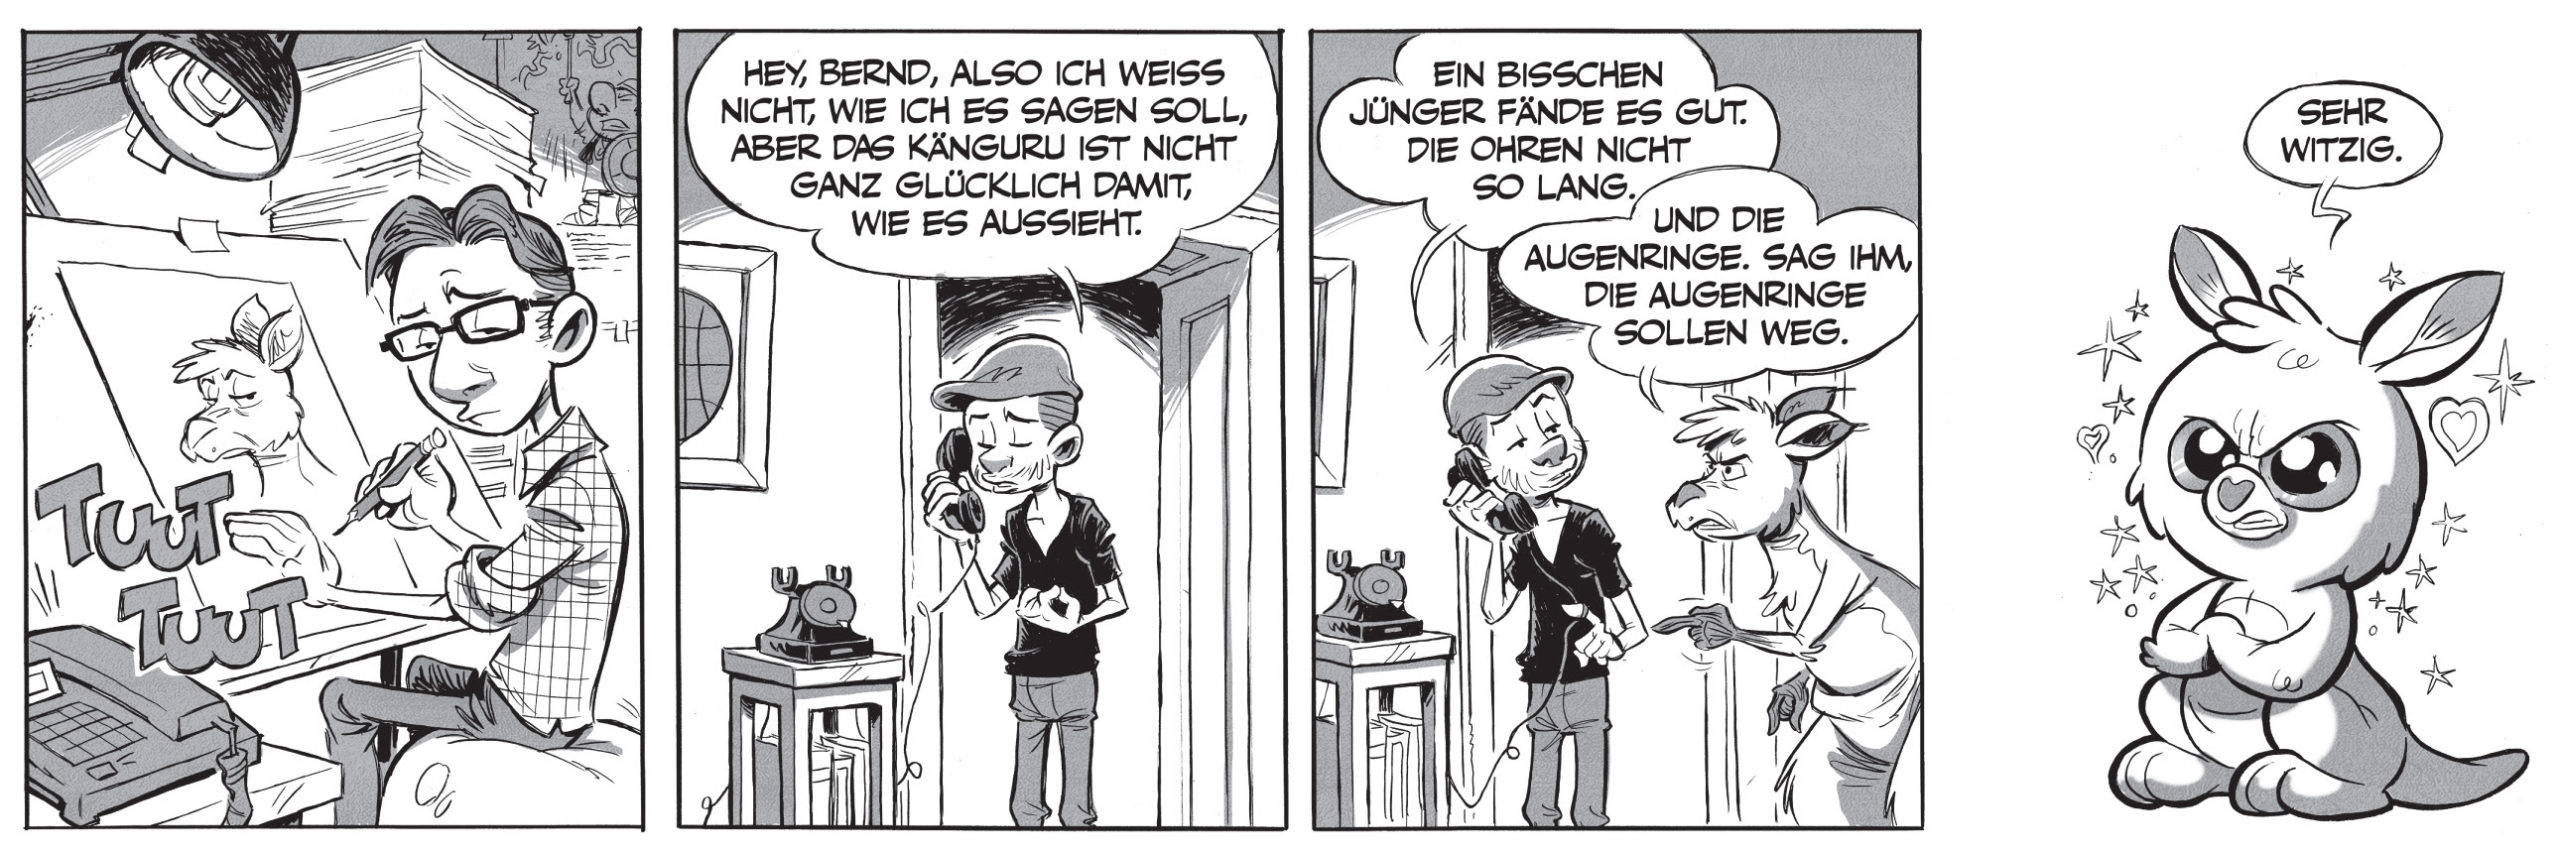 Die Känguru-Comics von Bernd Kissel und Marc-Uwe Kling: cute